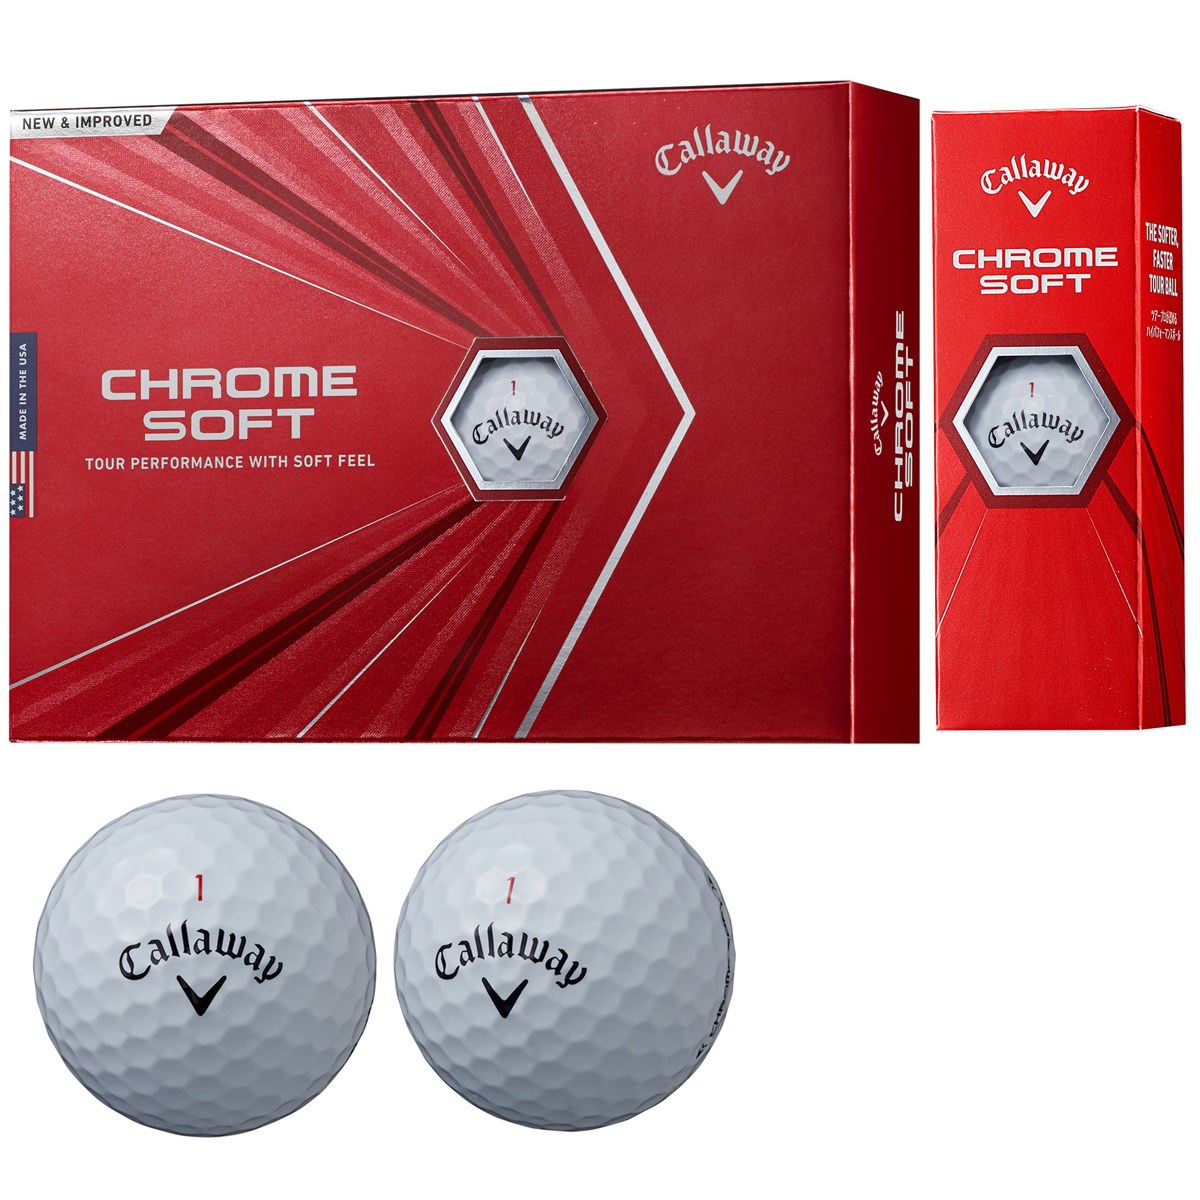 キャロウェイゴルフ(Callaway Golf) CHROME SOFT ボール 